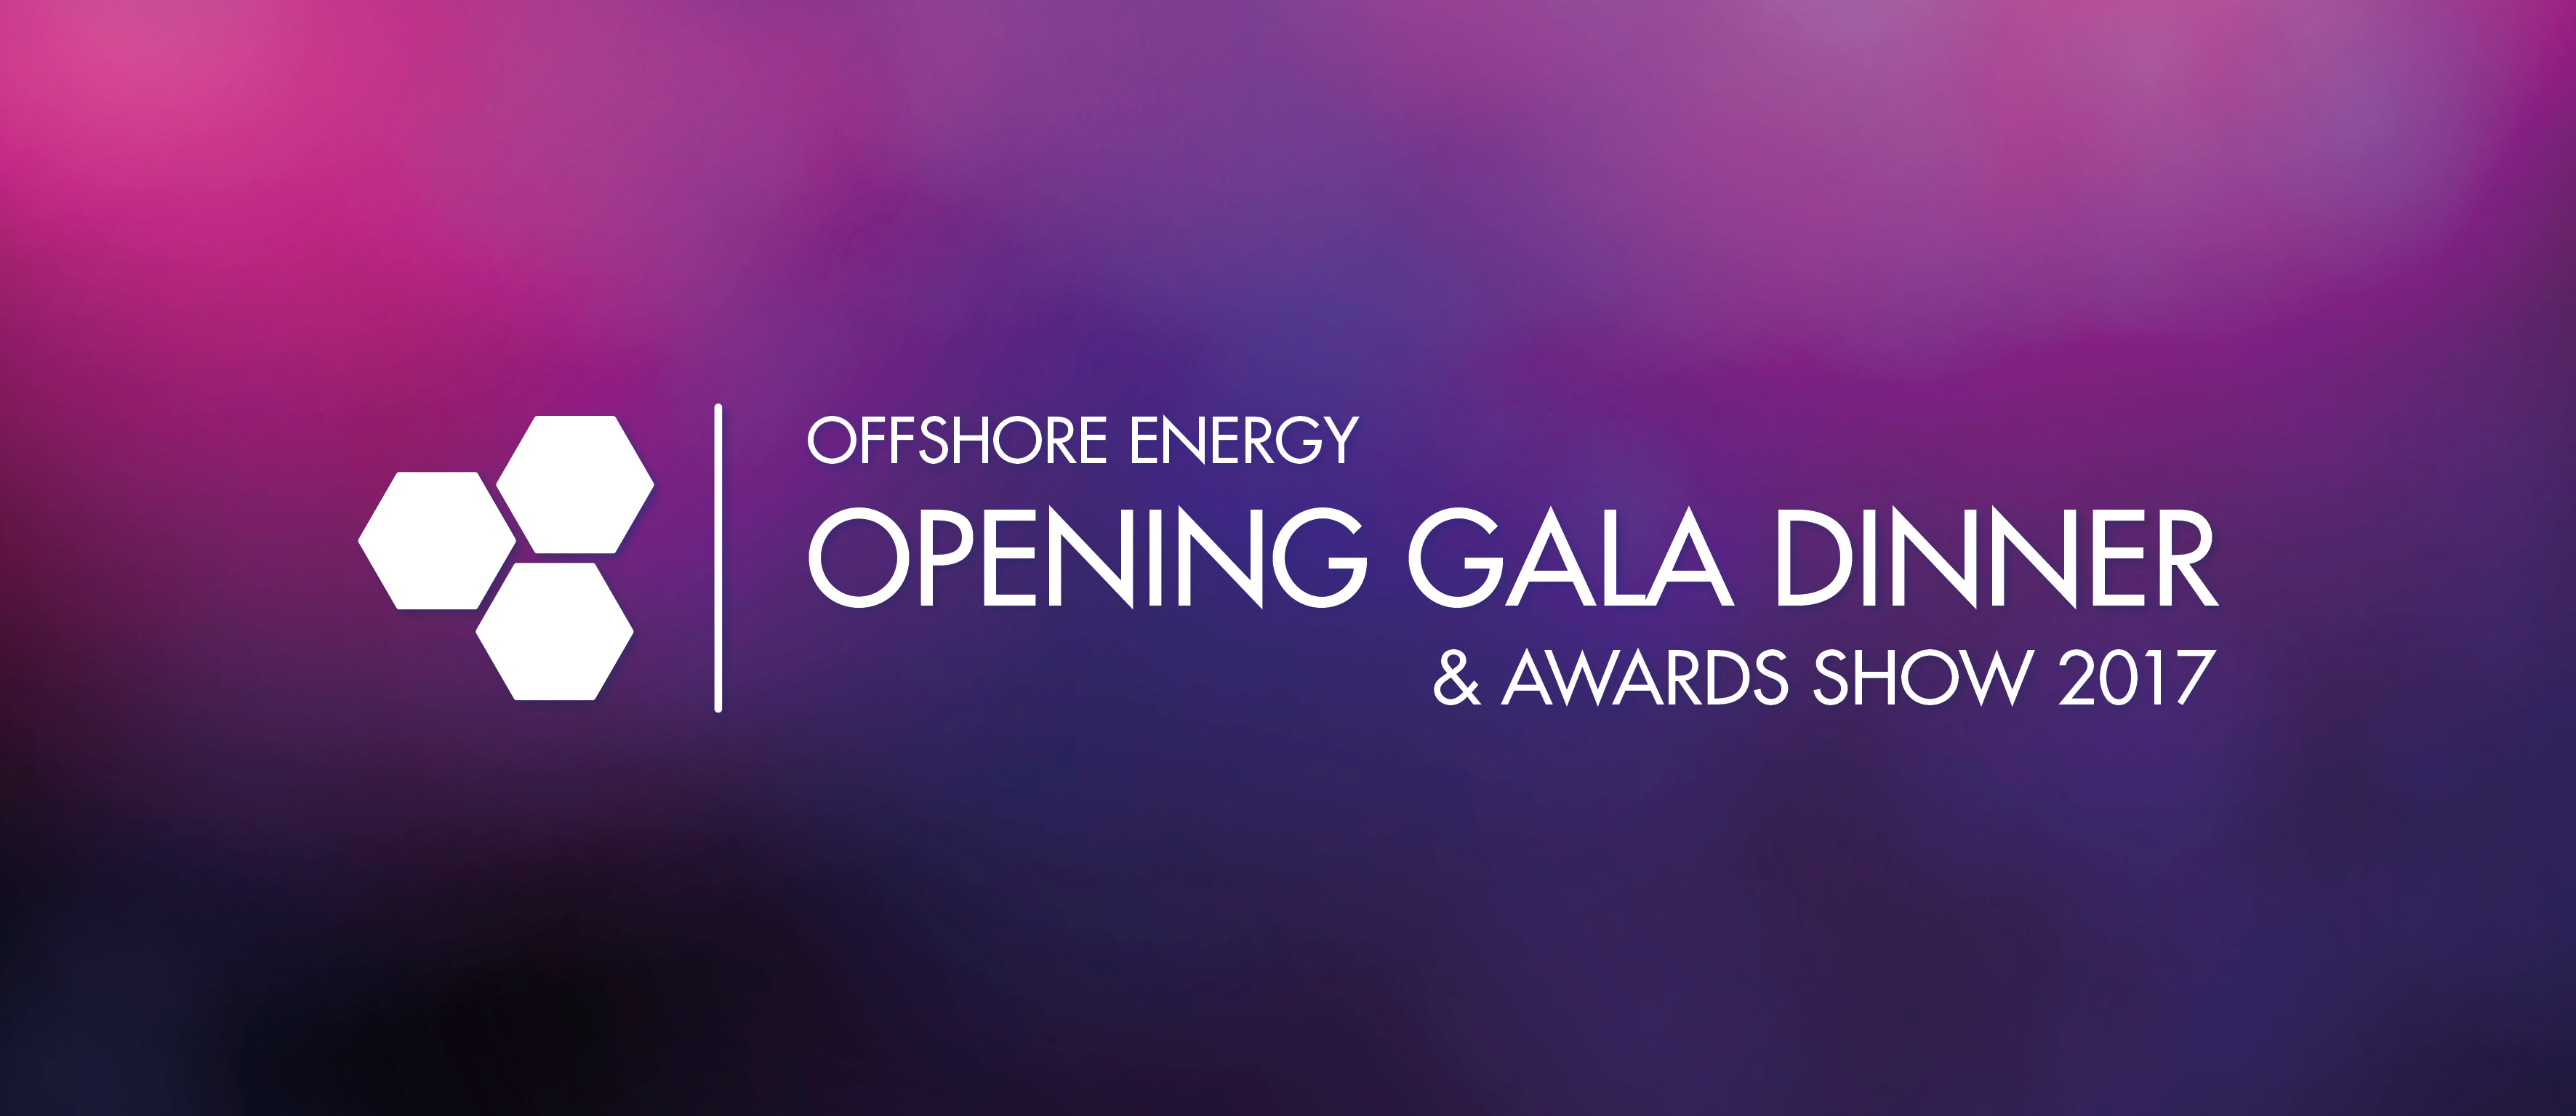 Offshore Energy Opening Gala Dinner en Industry Awards Show 2017 Scheepsvaartmuseum feestband.com